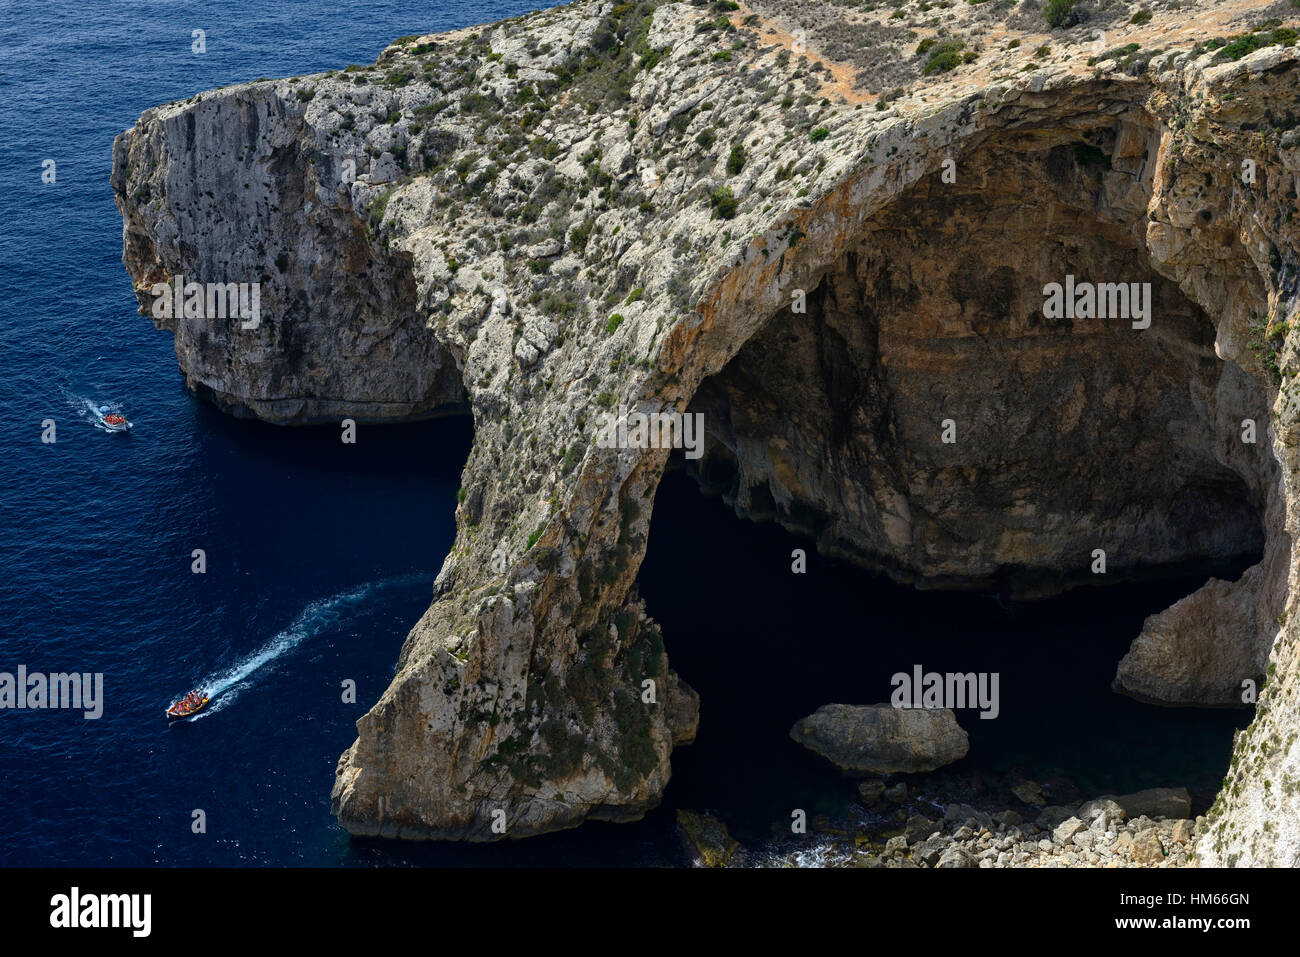 Blaue Grotte Malta Meer Bogen Küste Küstenerosion Mittelmeer azurblauem Meer touristische Attraktion Sightseeing Wahrzeichen RM Welt Stockfoto